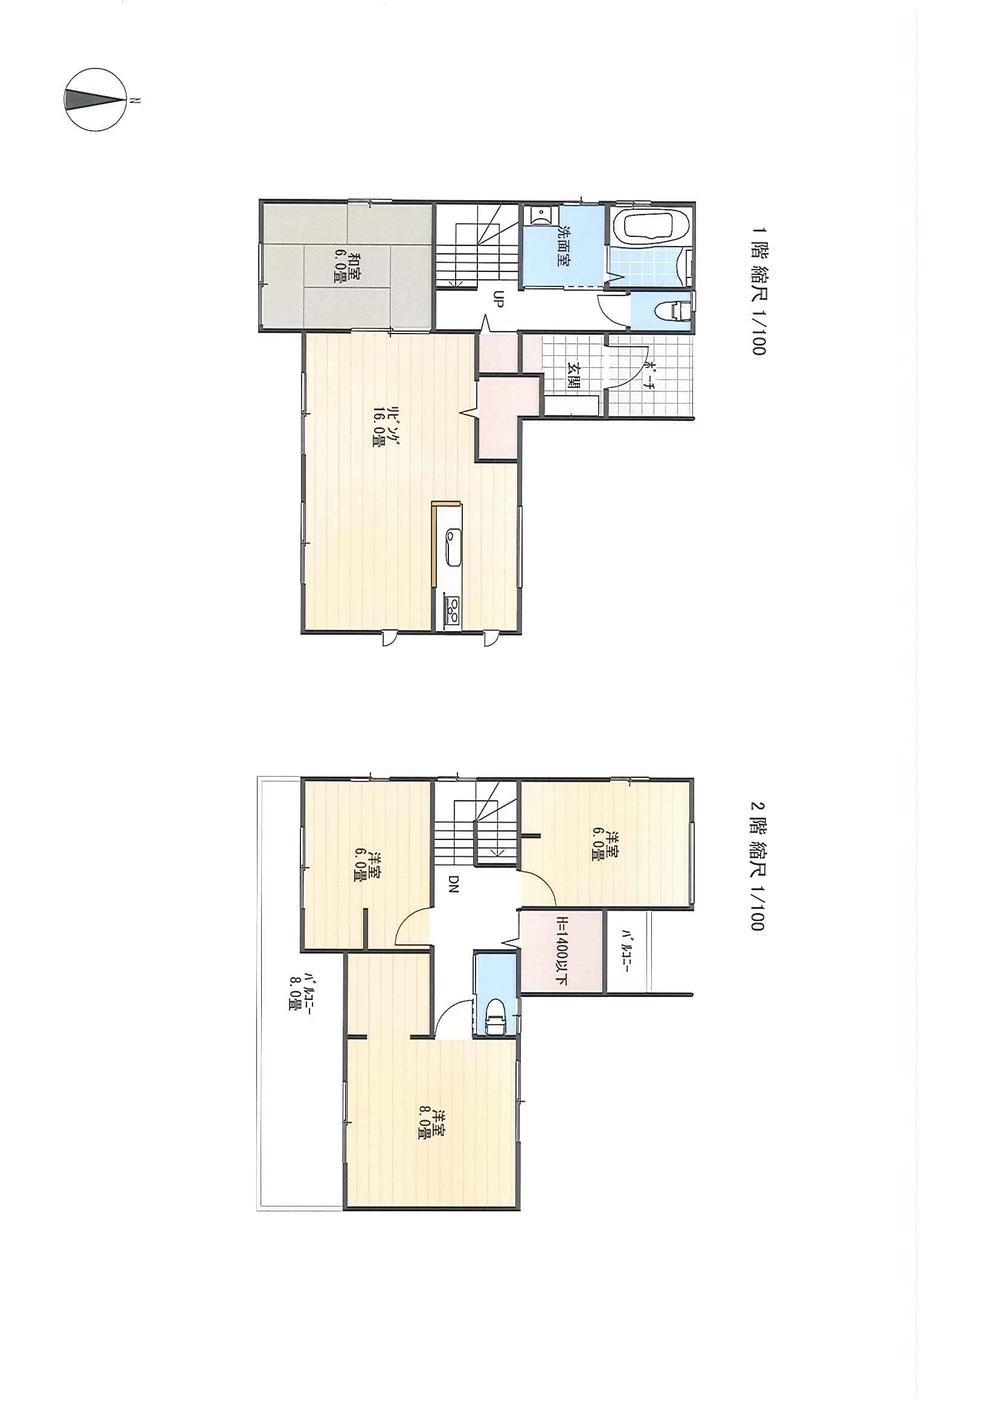 Floor plan. 22.5 million yen, 4LDK, Land area 162.11 sq m , Building area 103.5 sq m